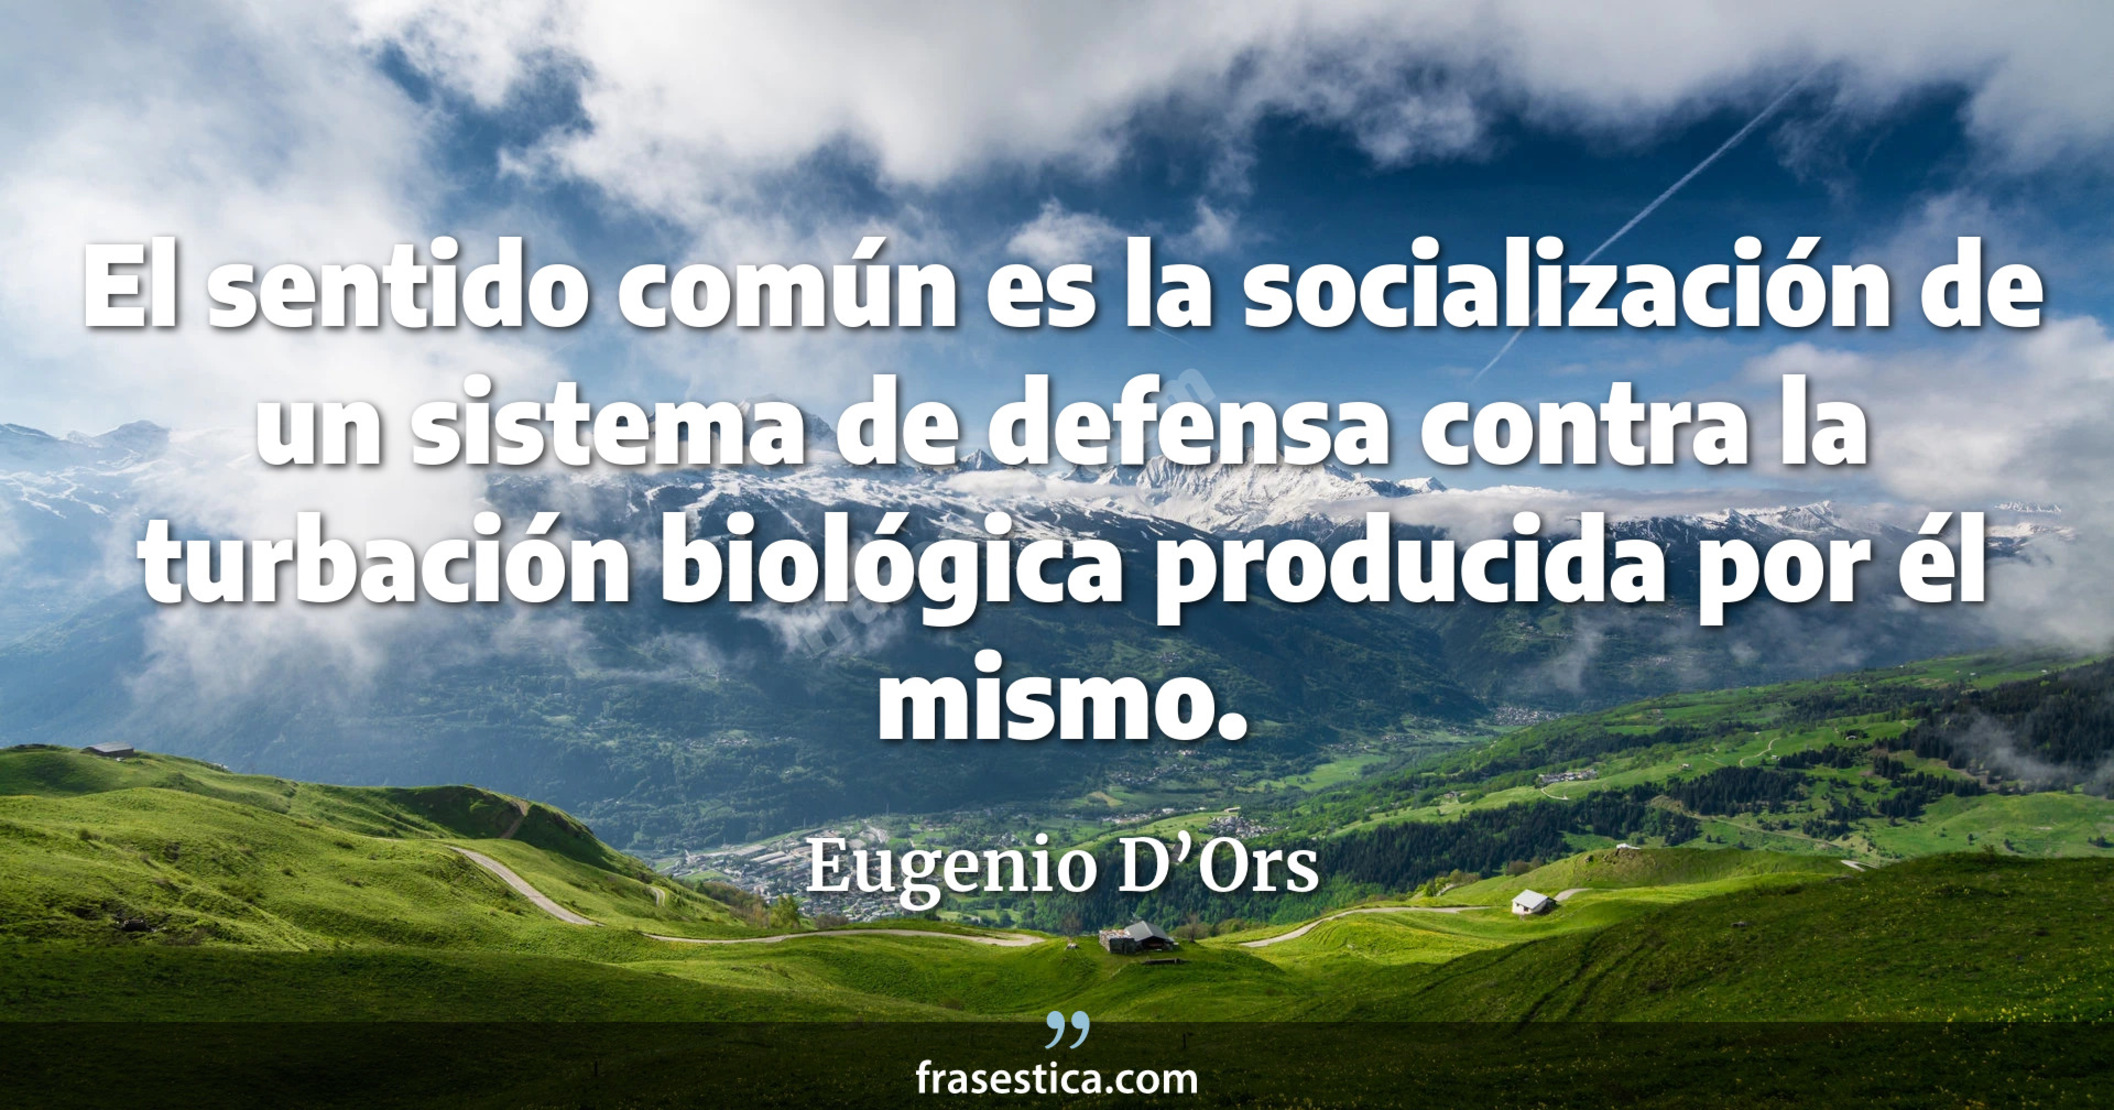 El sentido común es la socialización de un sistema de defensa contra la turbación biológica producida por él mismo. - Eugenio D’Ors